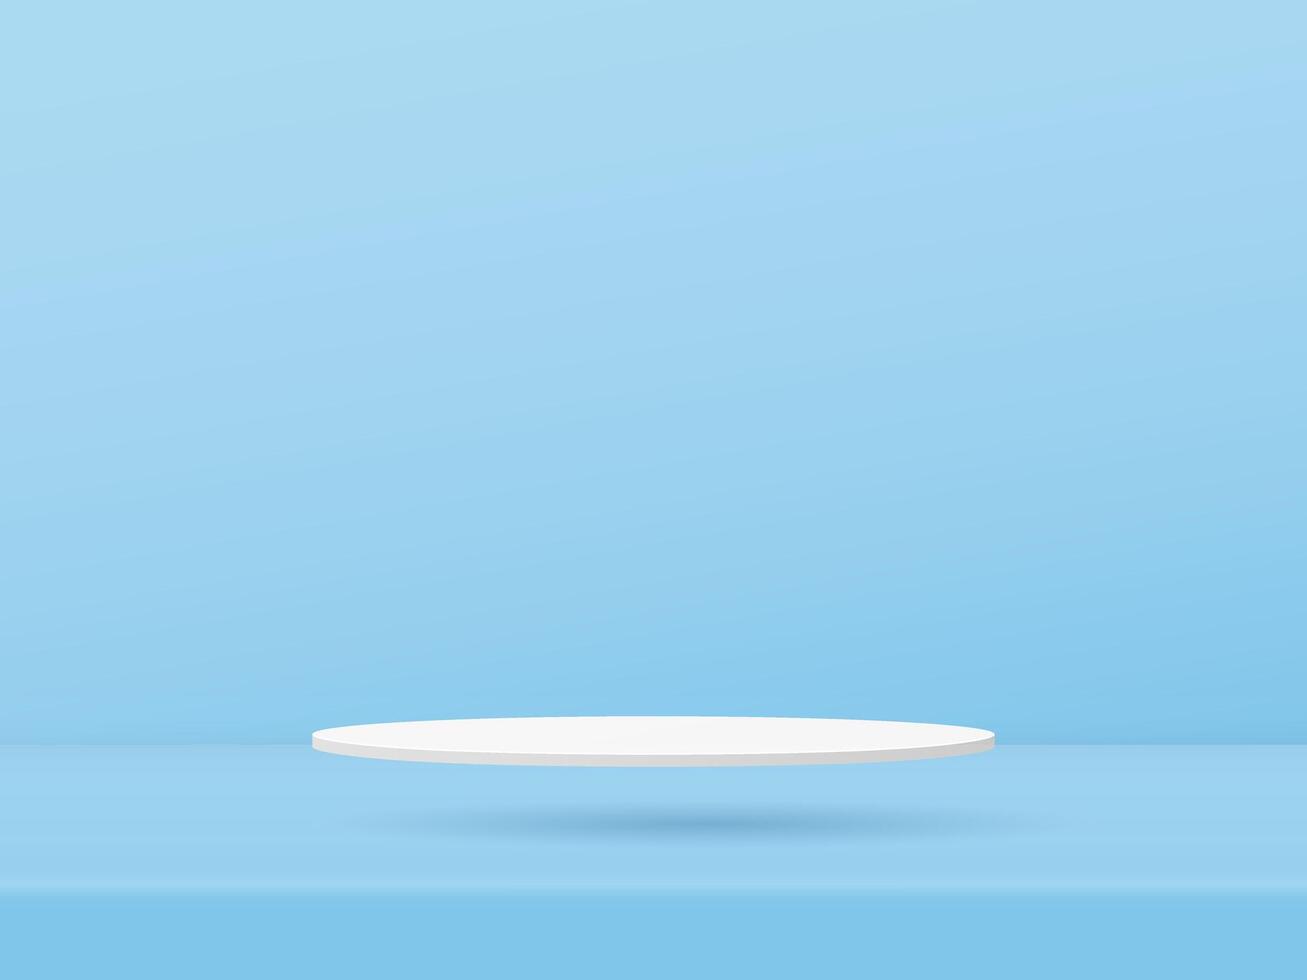 3d blanc podium vitrine est flottant sur le sol coloré bleu Contexte conception. vecteur papier art illustration